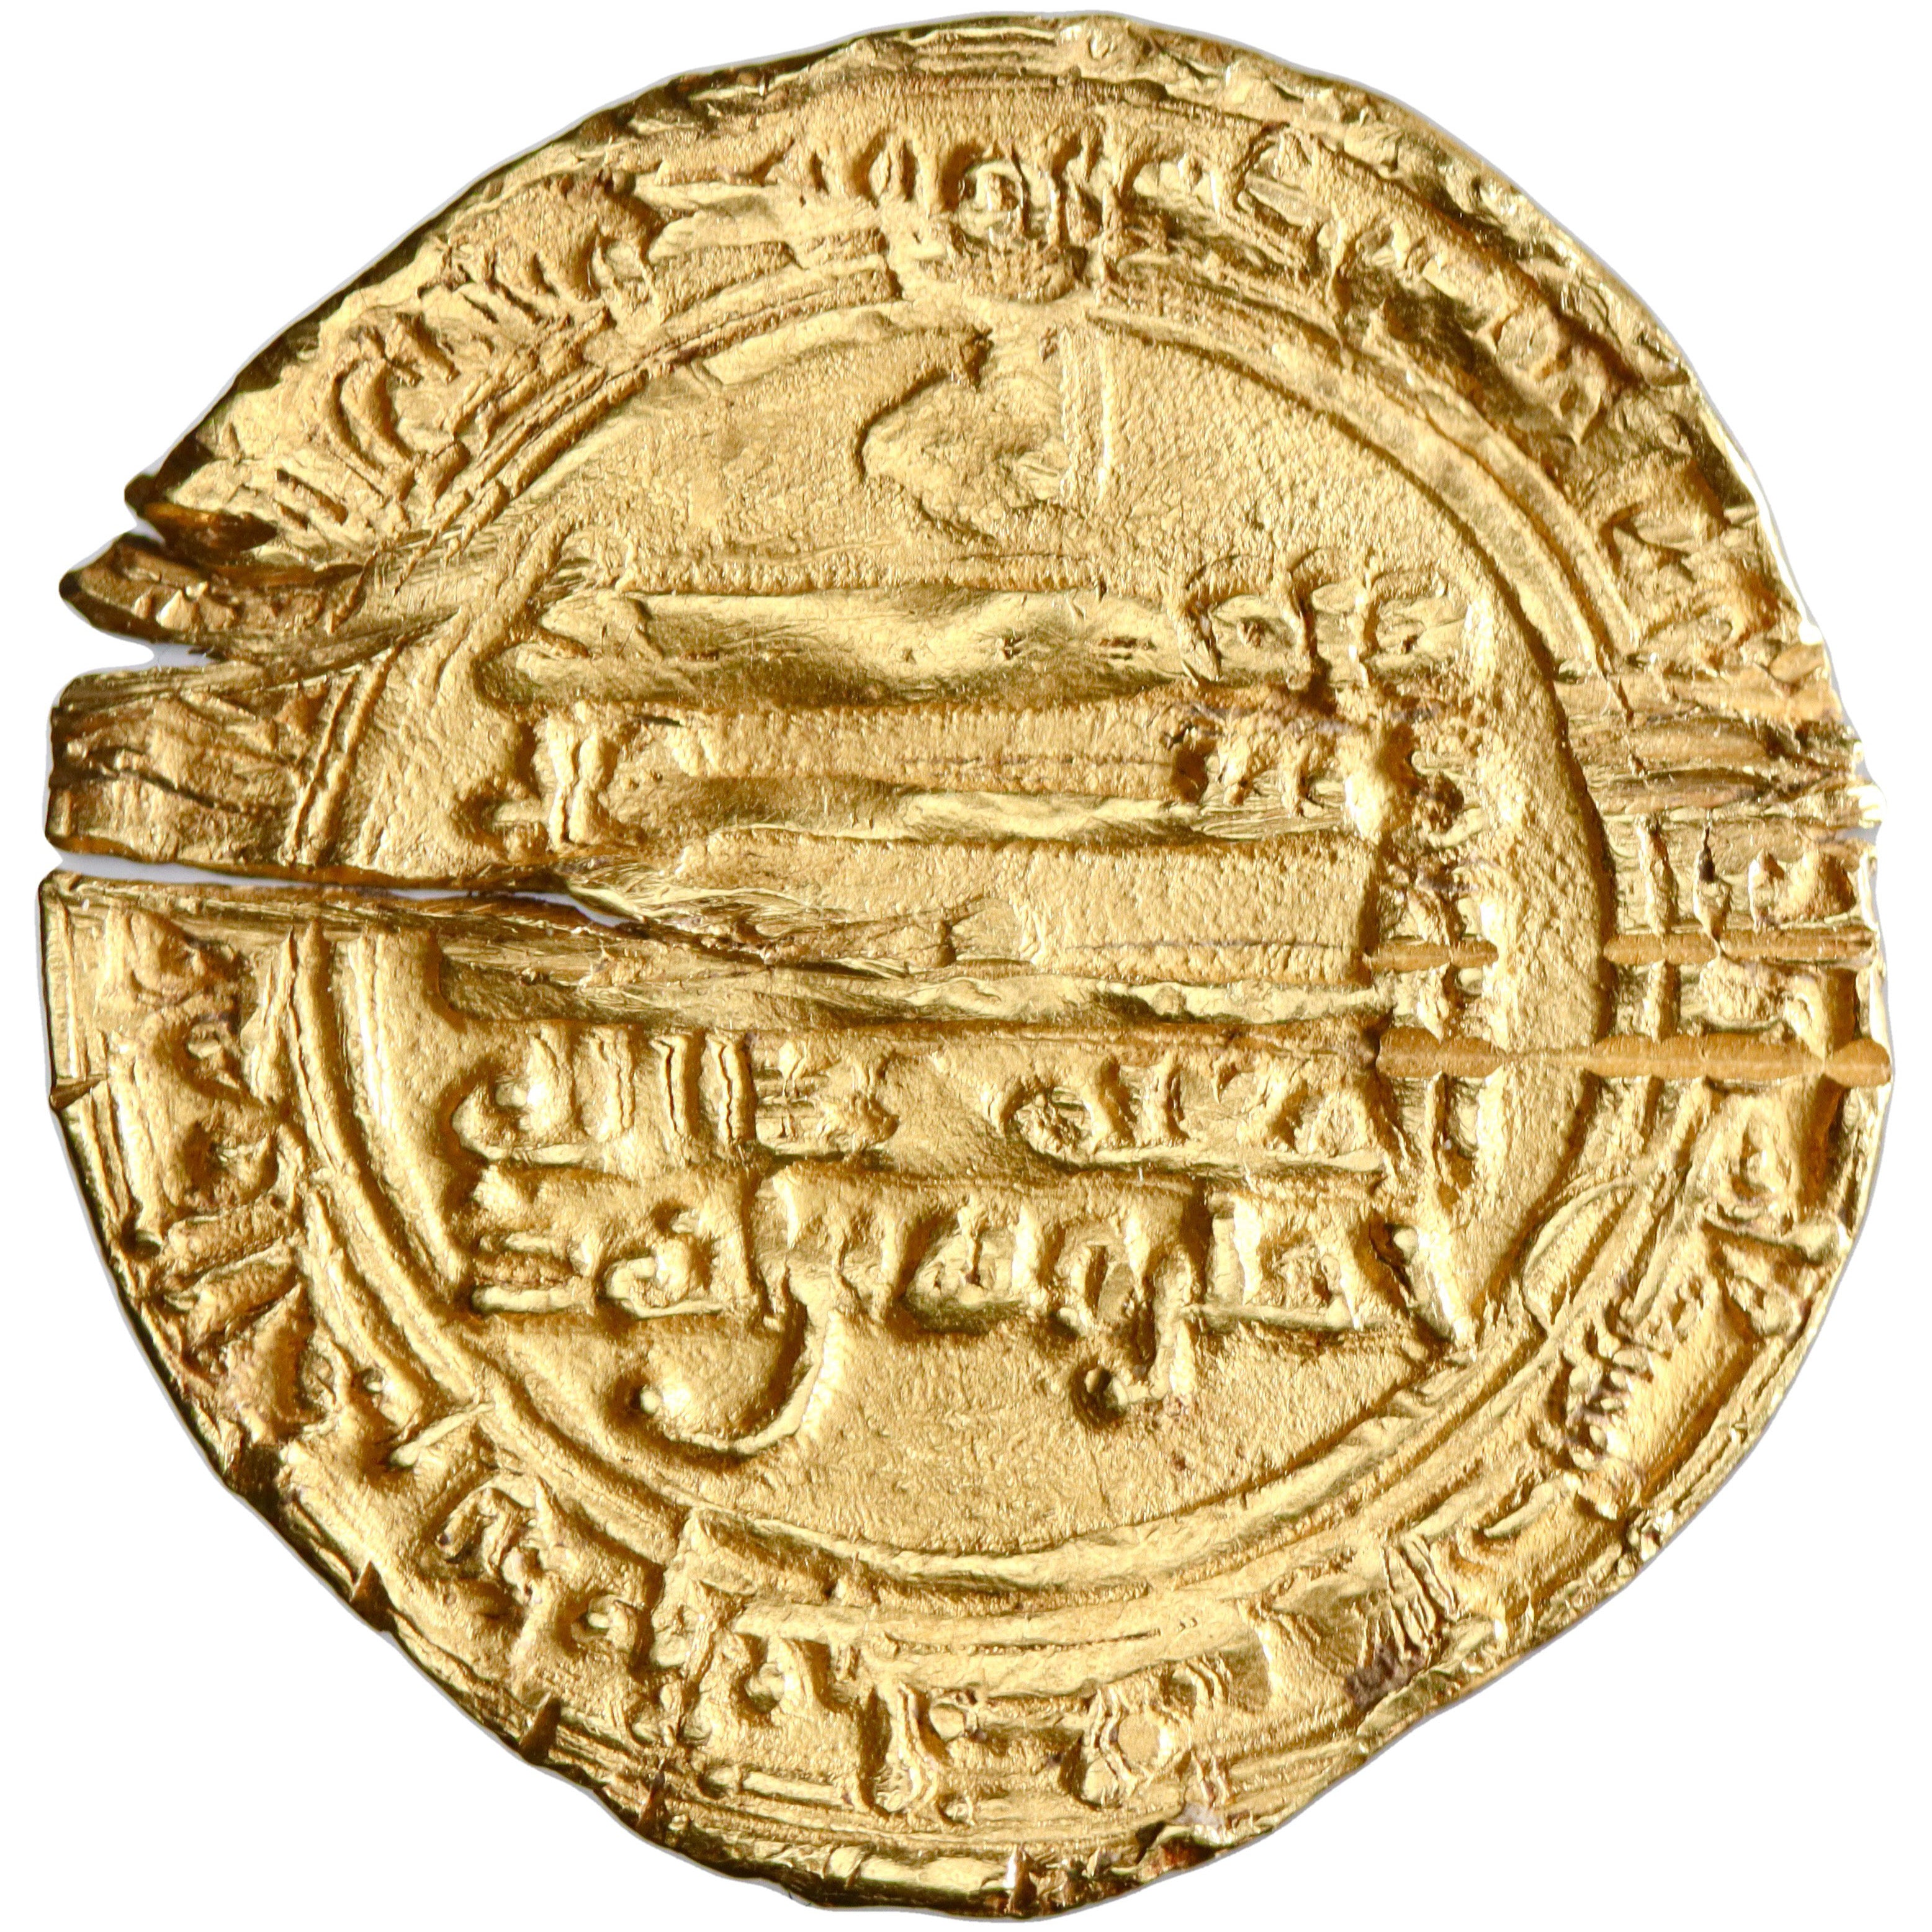 Tulunid, Khumarawayh ibn Ahmad, gold dinar, Antakiya mint, AH 278, citing Al-Mu'tamid and Al-Mufawwidh